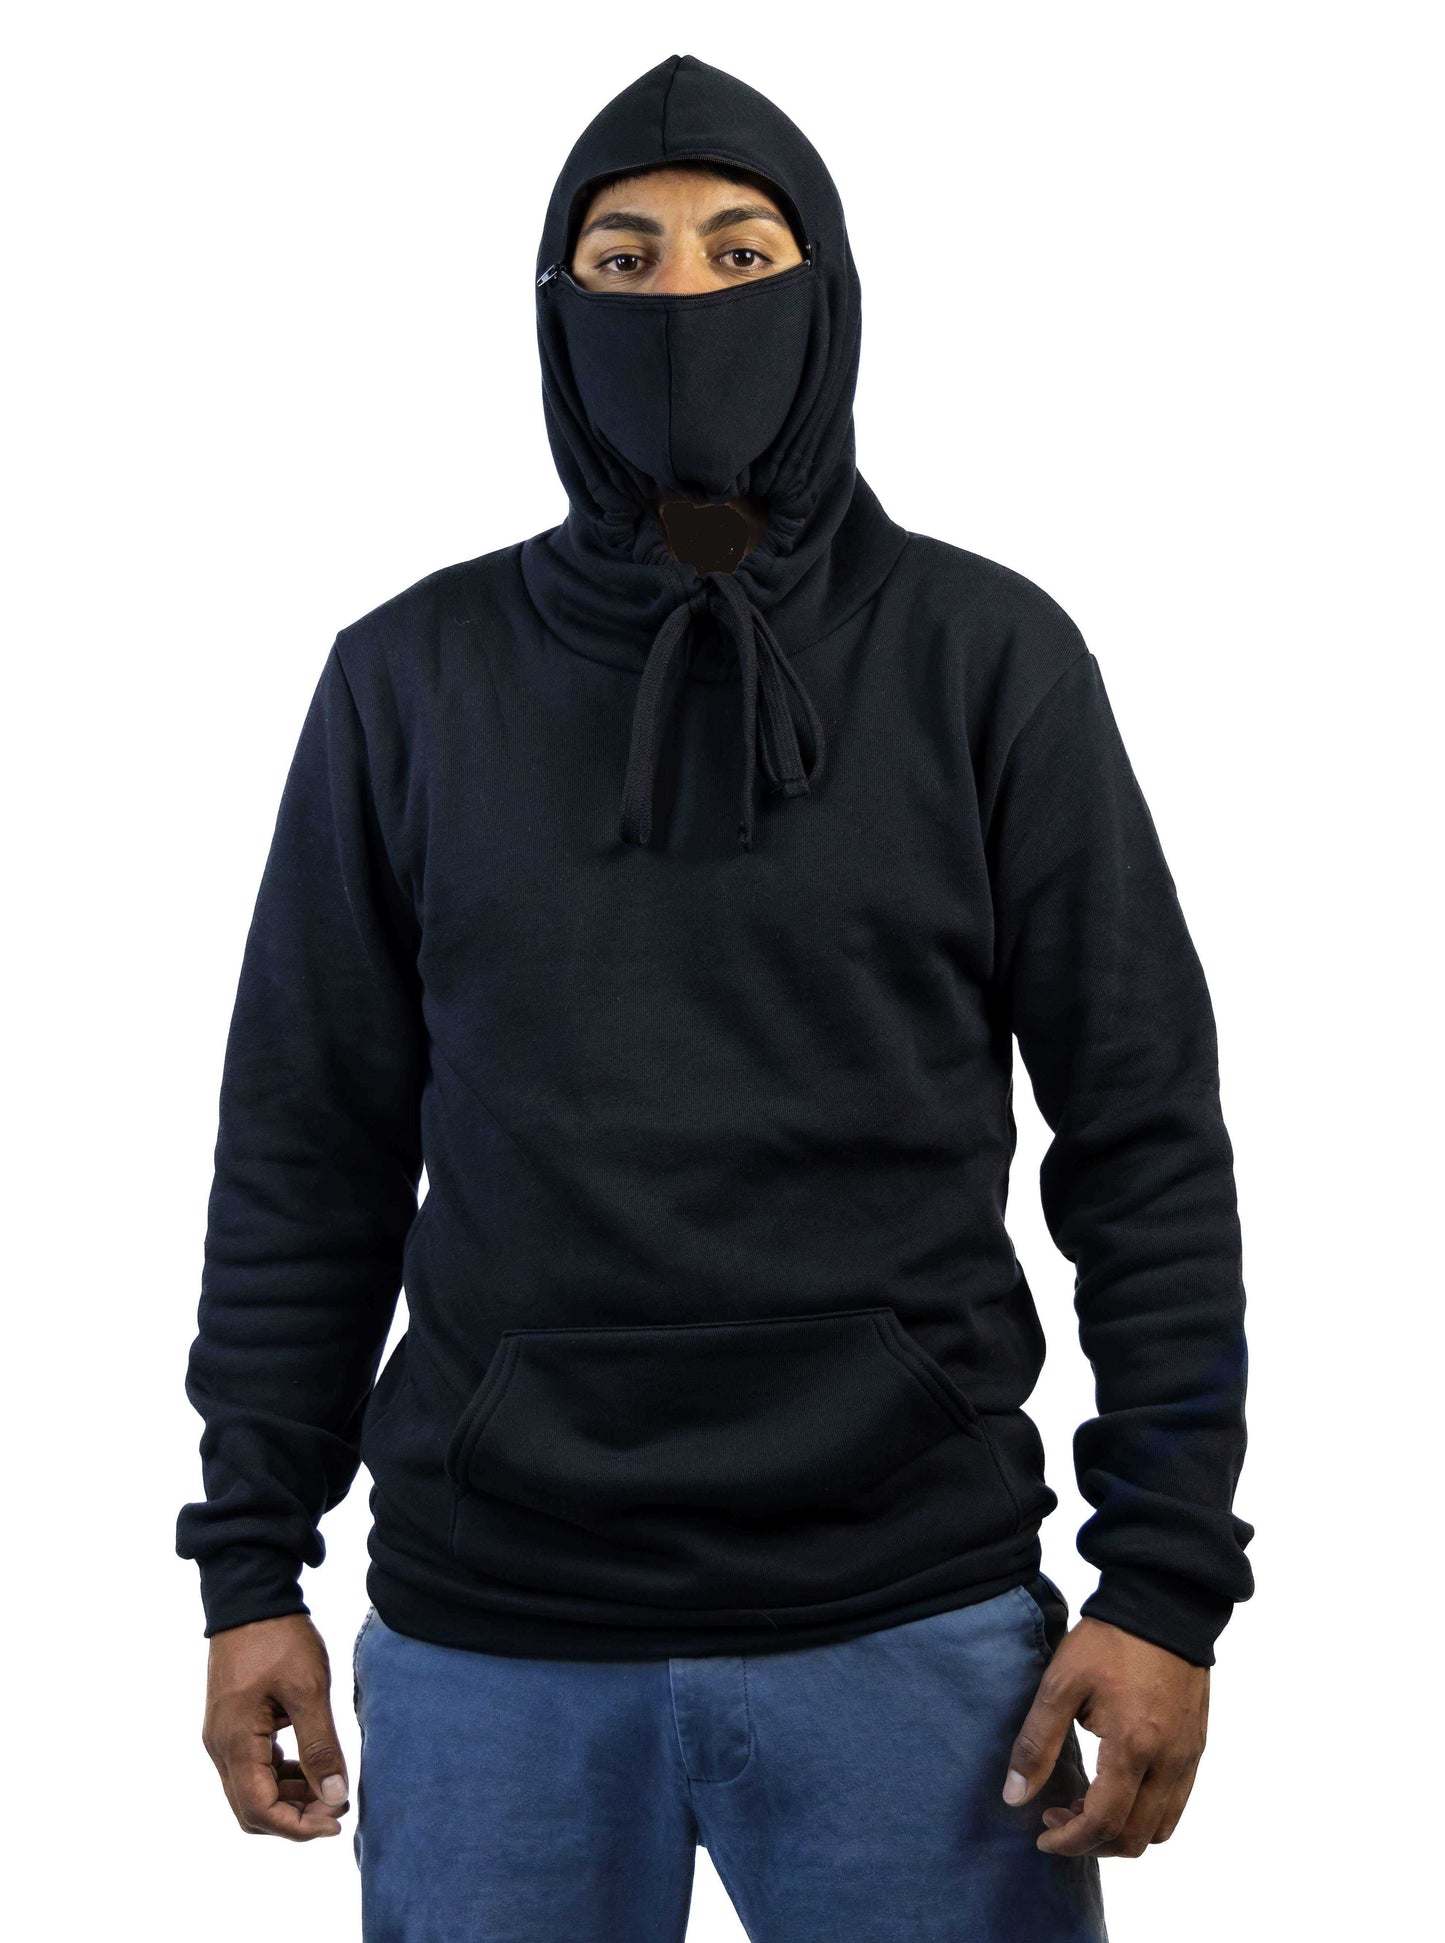 Hoodie Mask Black Pull-over Sweatshirt